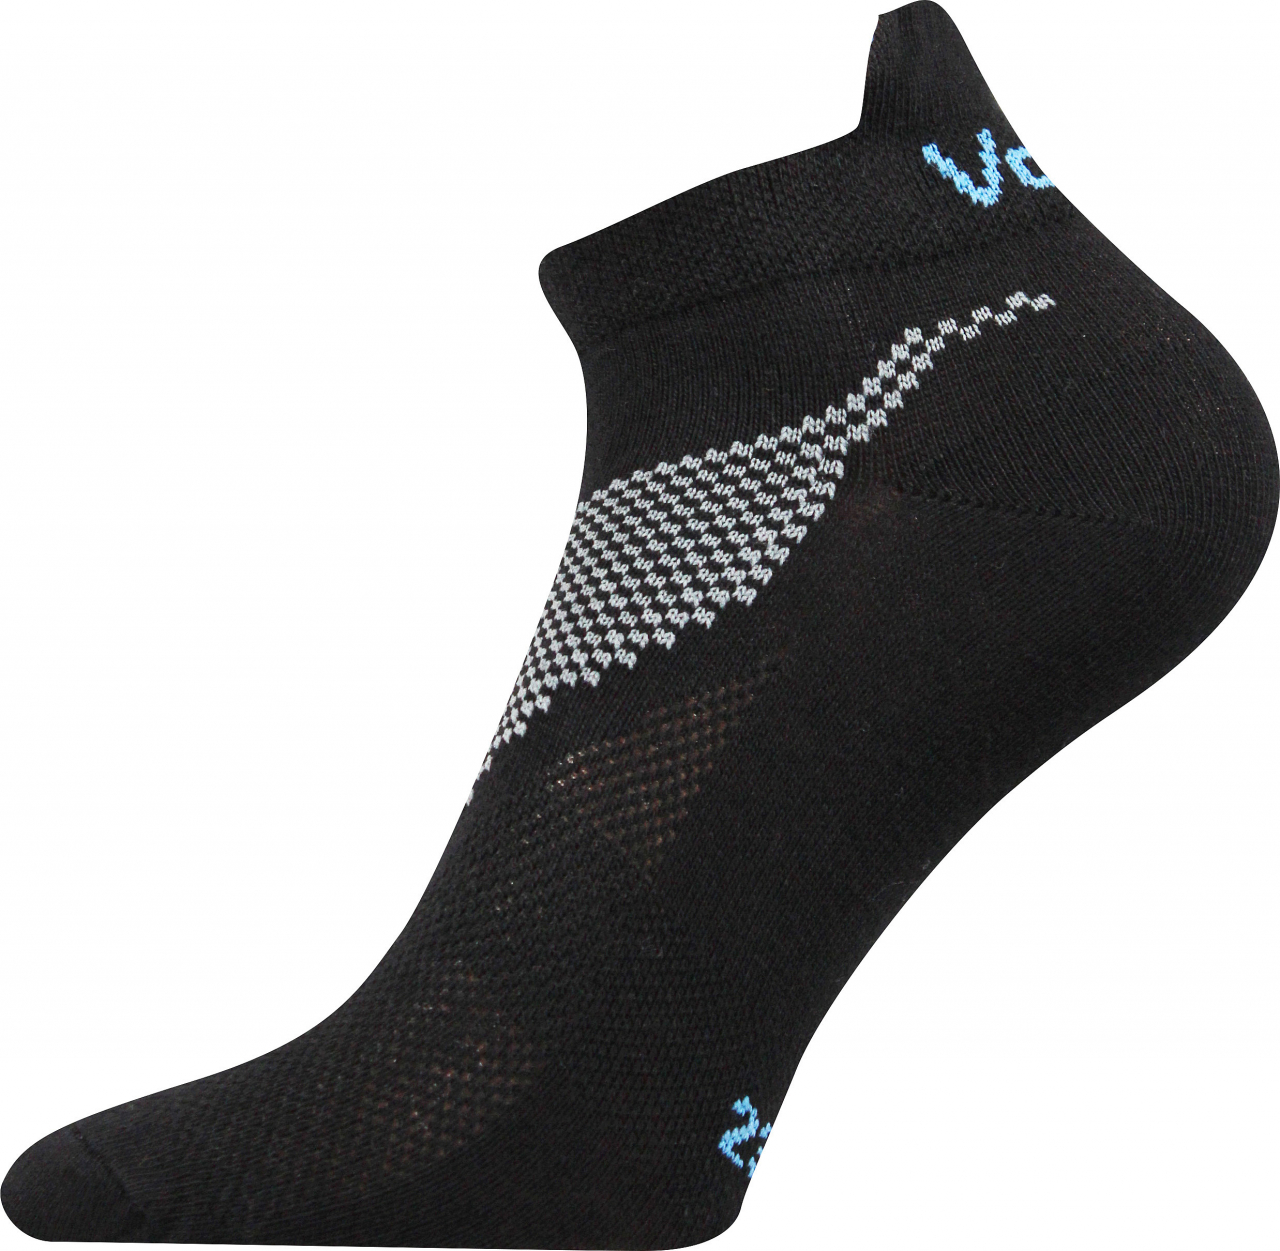 Ponožky sportovní nízké Voxx Iris - černé, 43-46